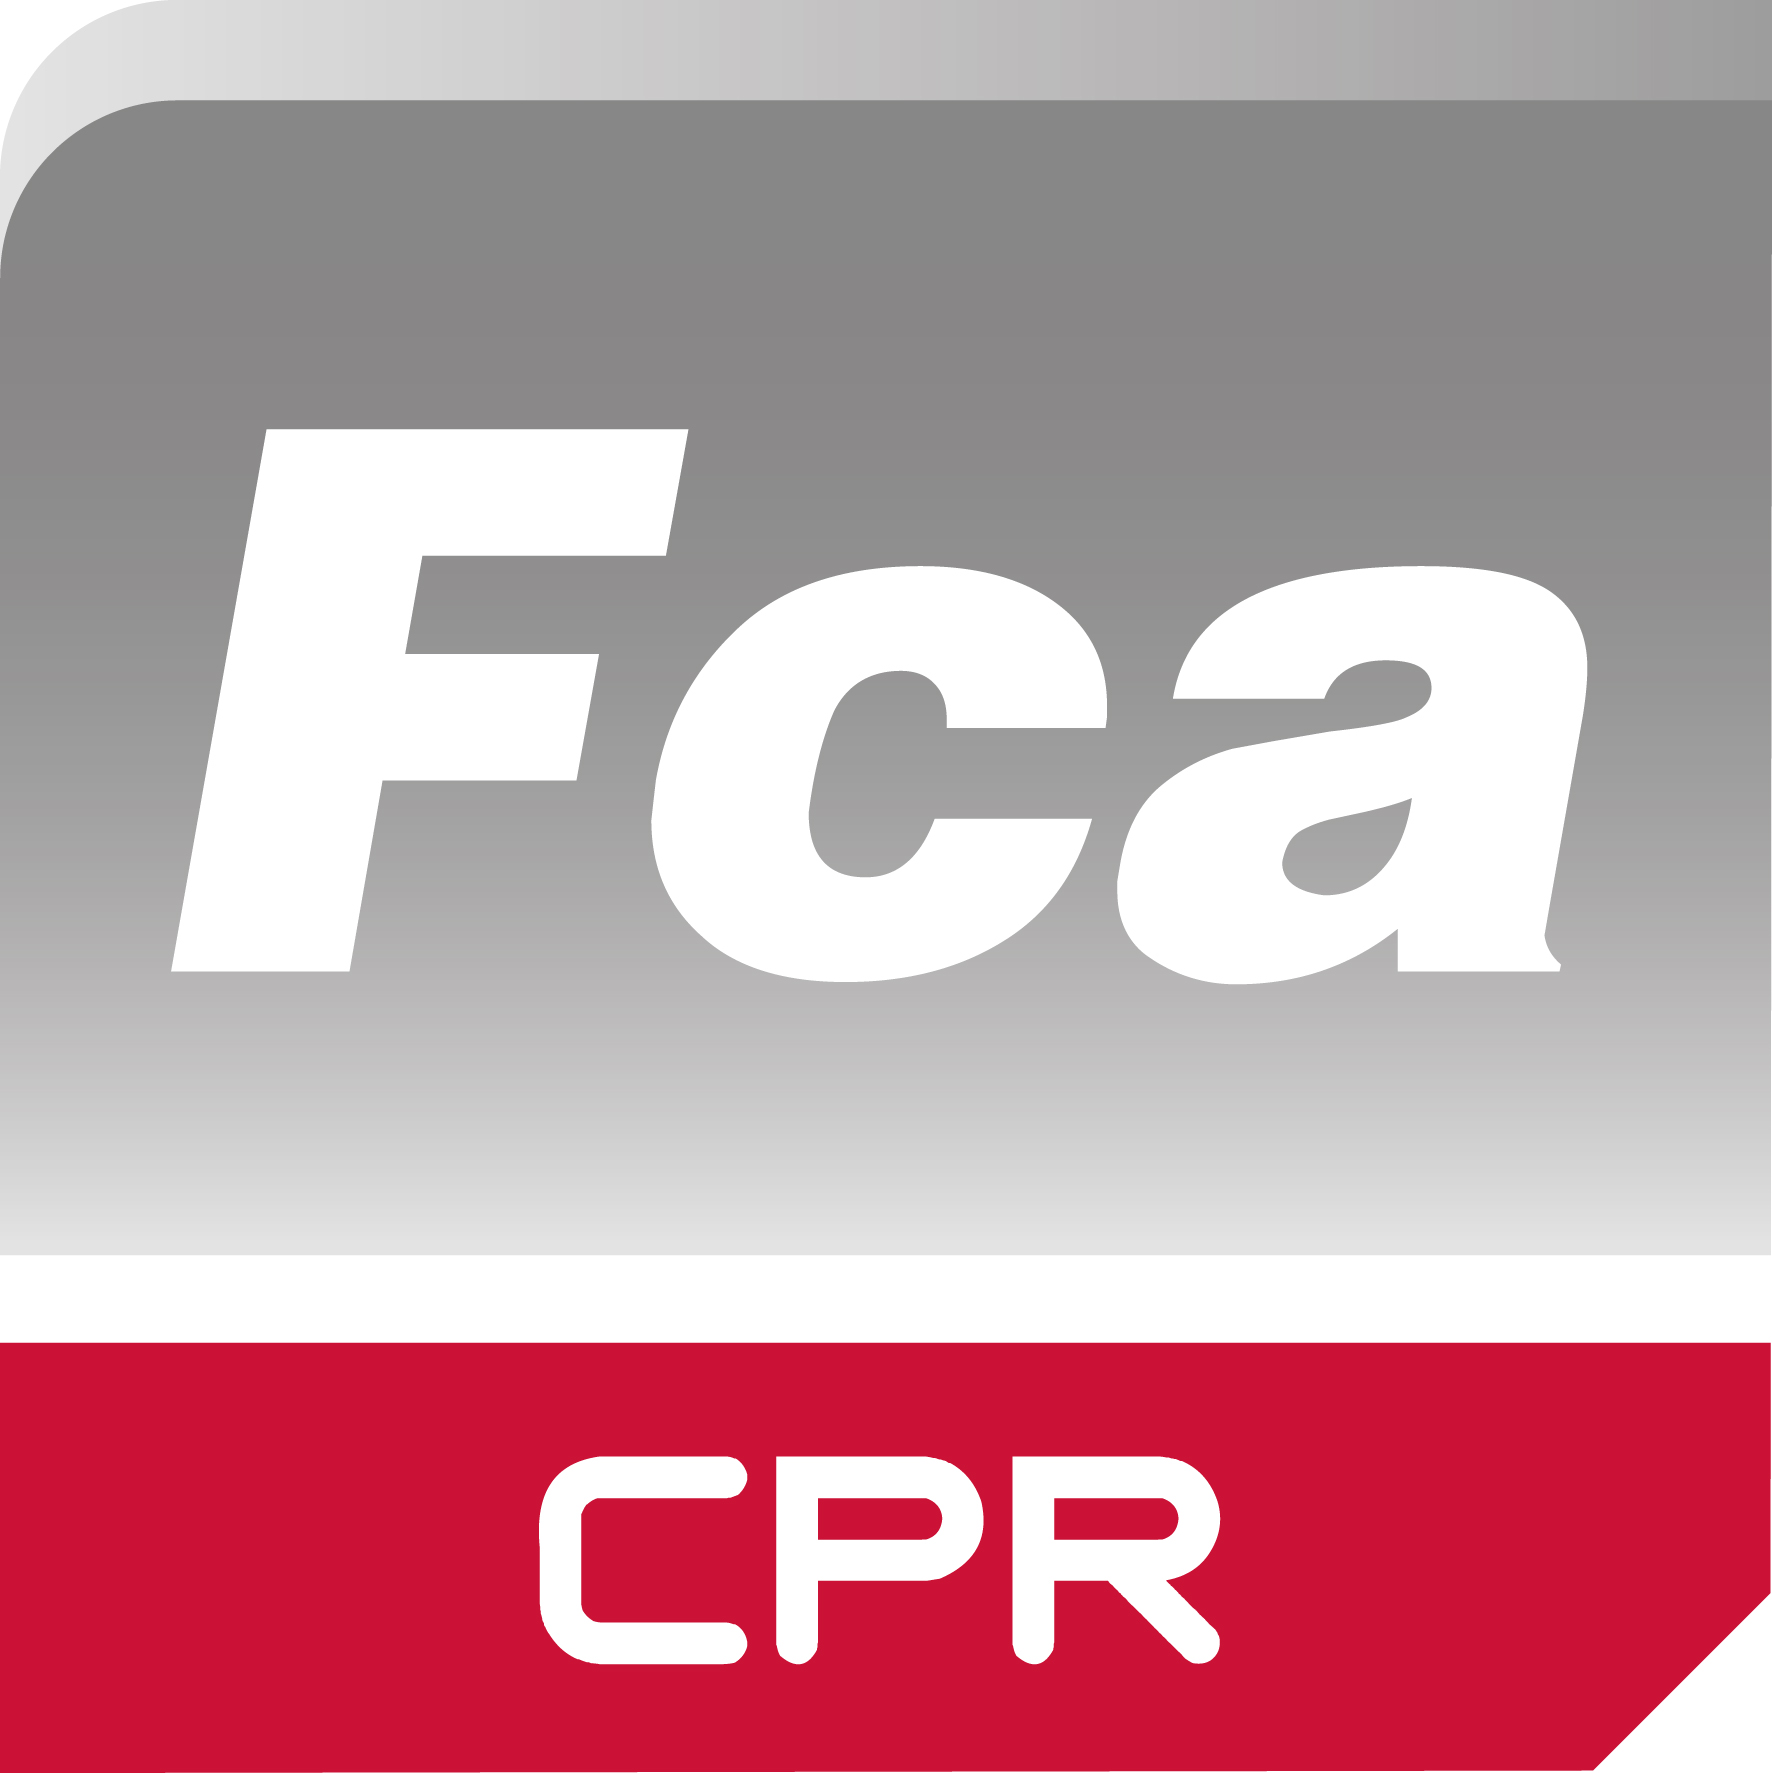 CPR-Fca